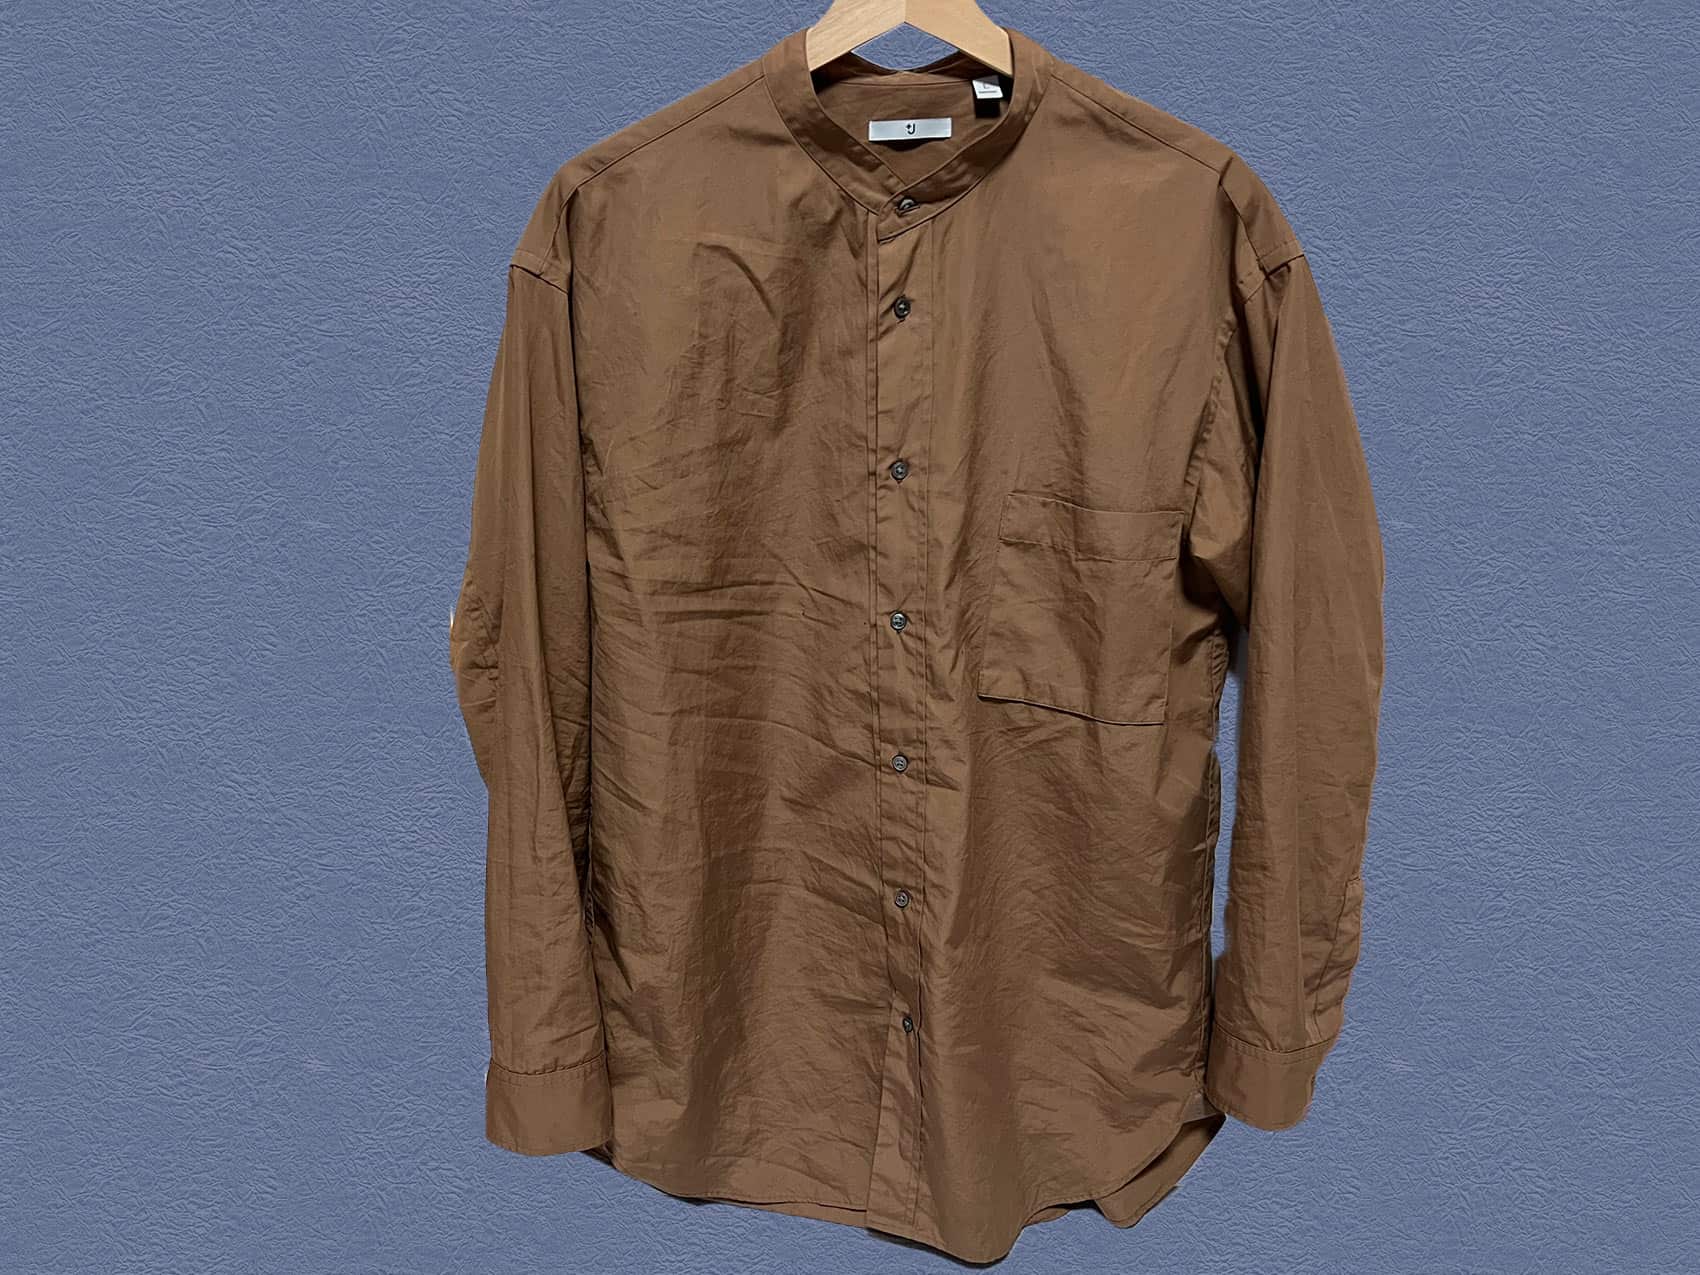 UNIQLOとジル・サンダーのコラボレーションライン「+J」で2021年に販売されていた「スーピマコットンオーバーサイズスタンドカラーシャツ」